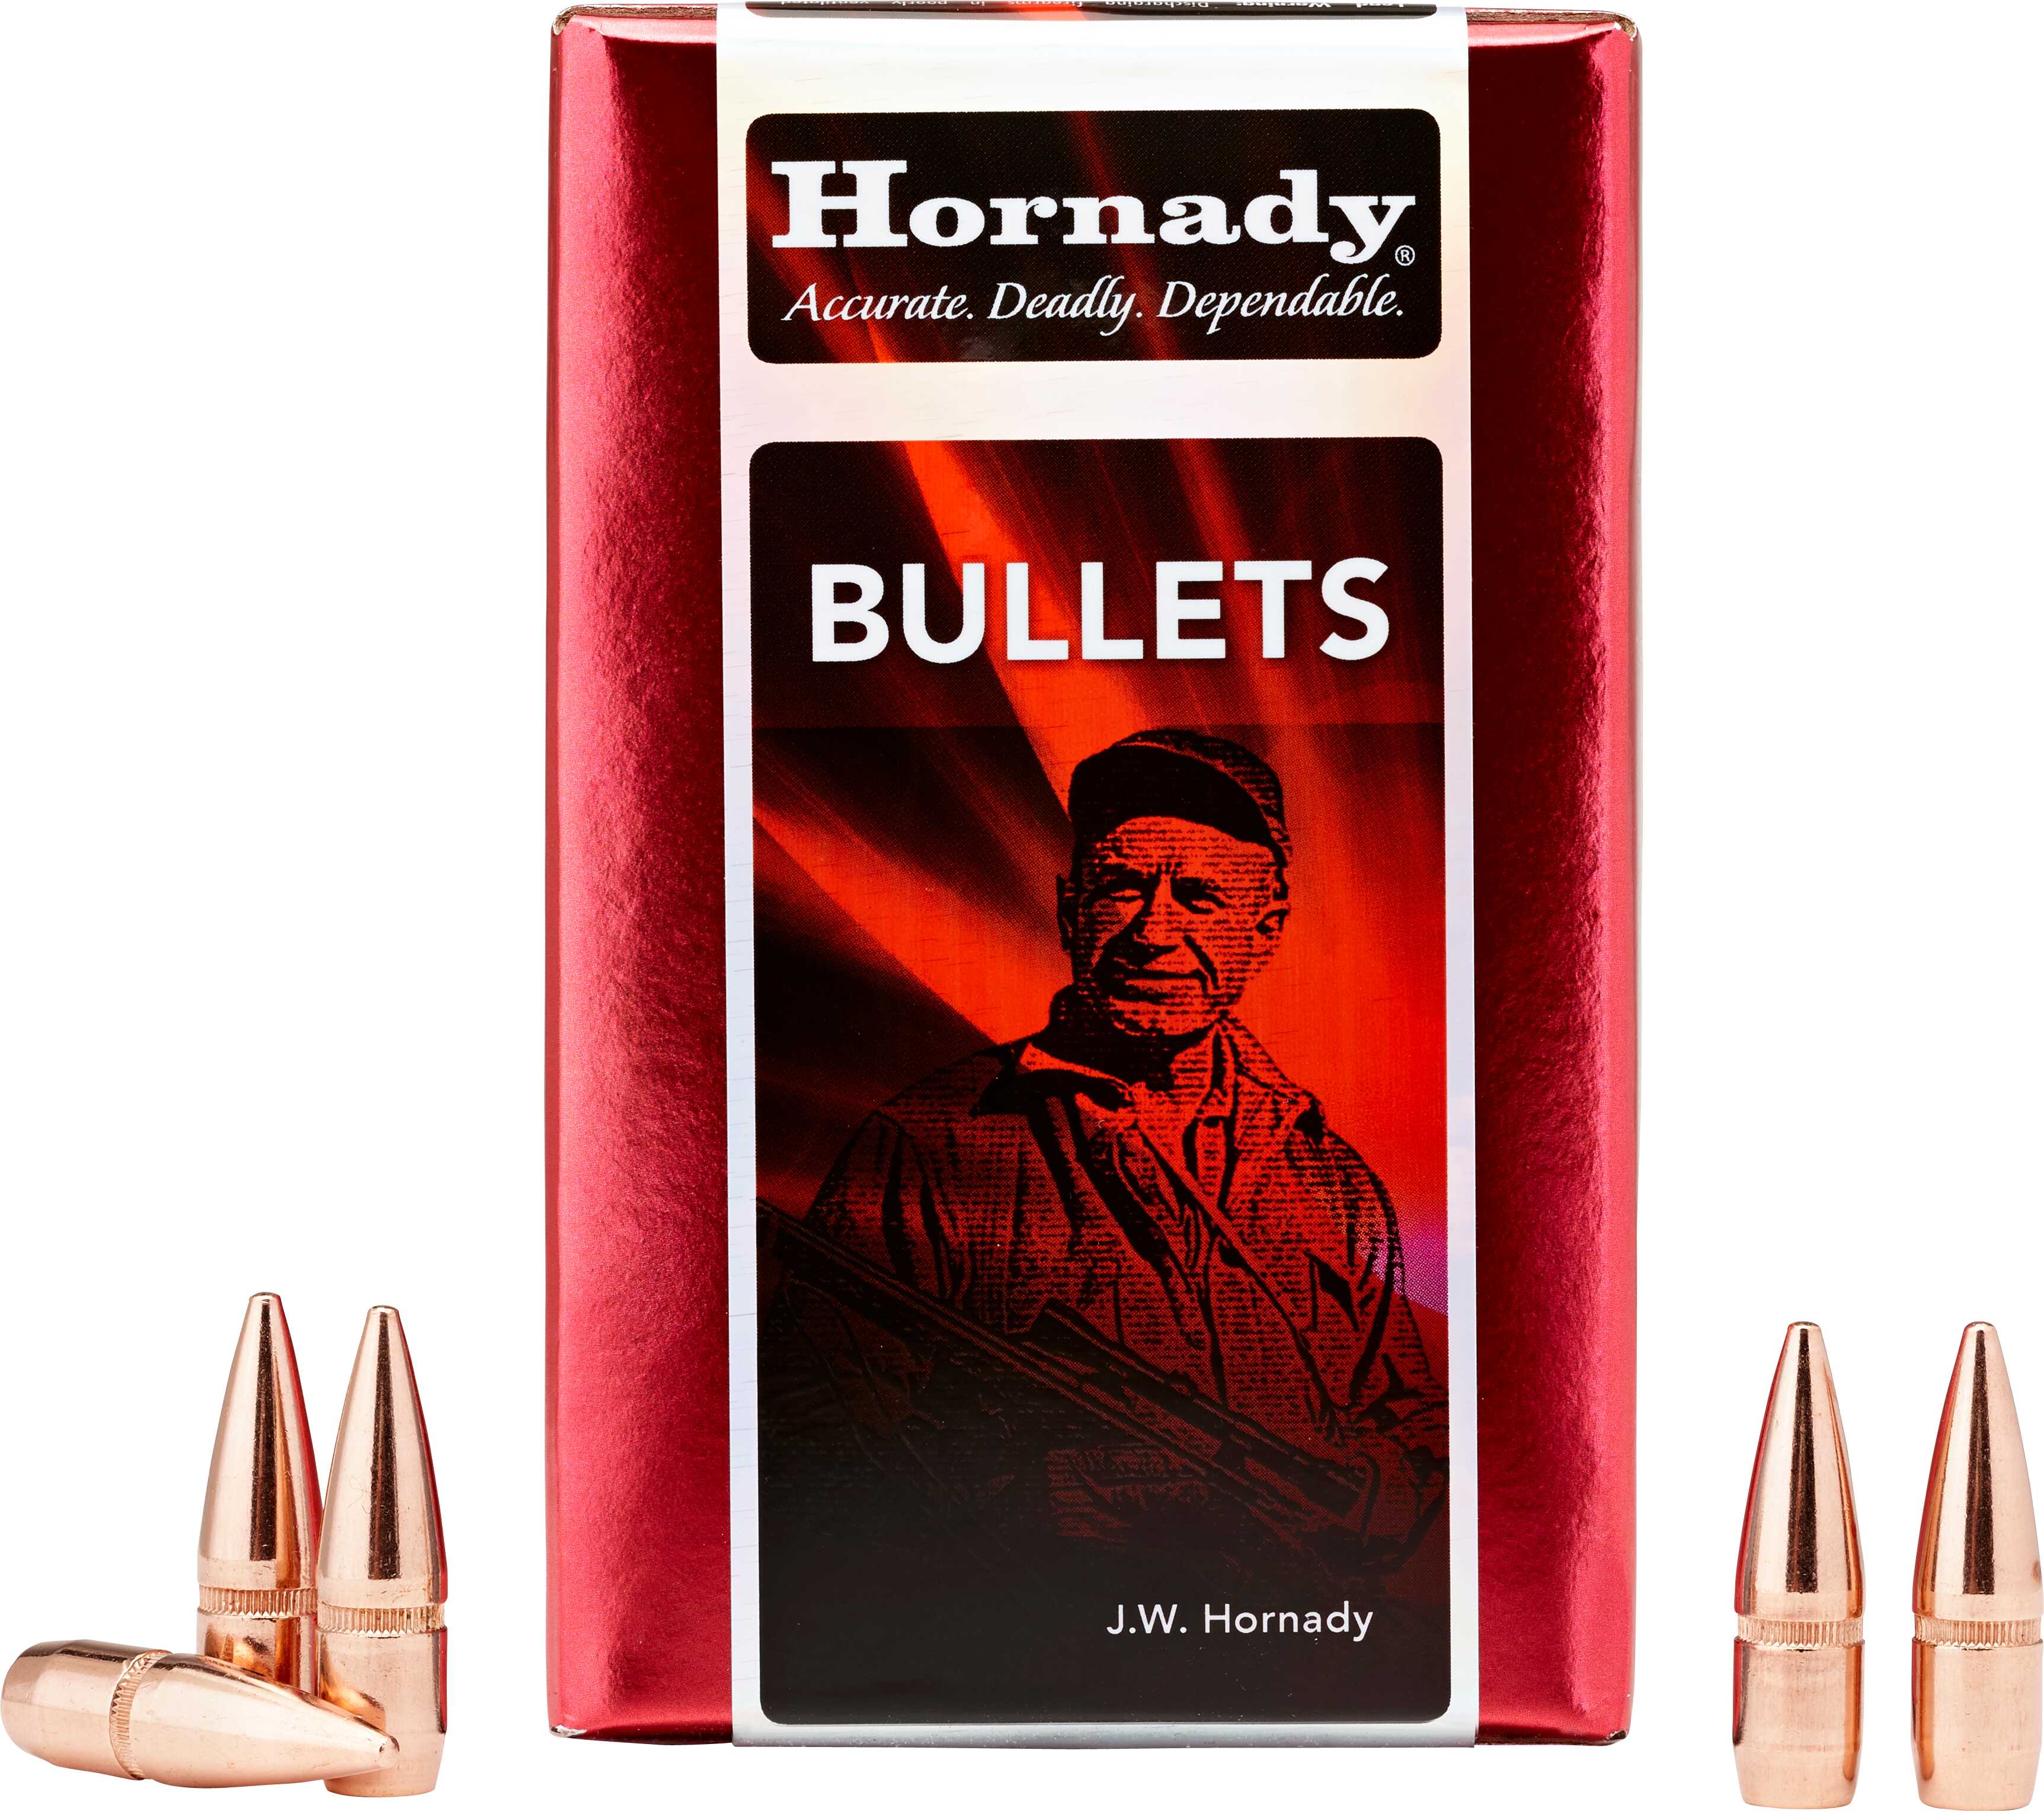 Hornady Bullet 44 Caliber 265 Grain Flat Nose 100/Box Md: 4300